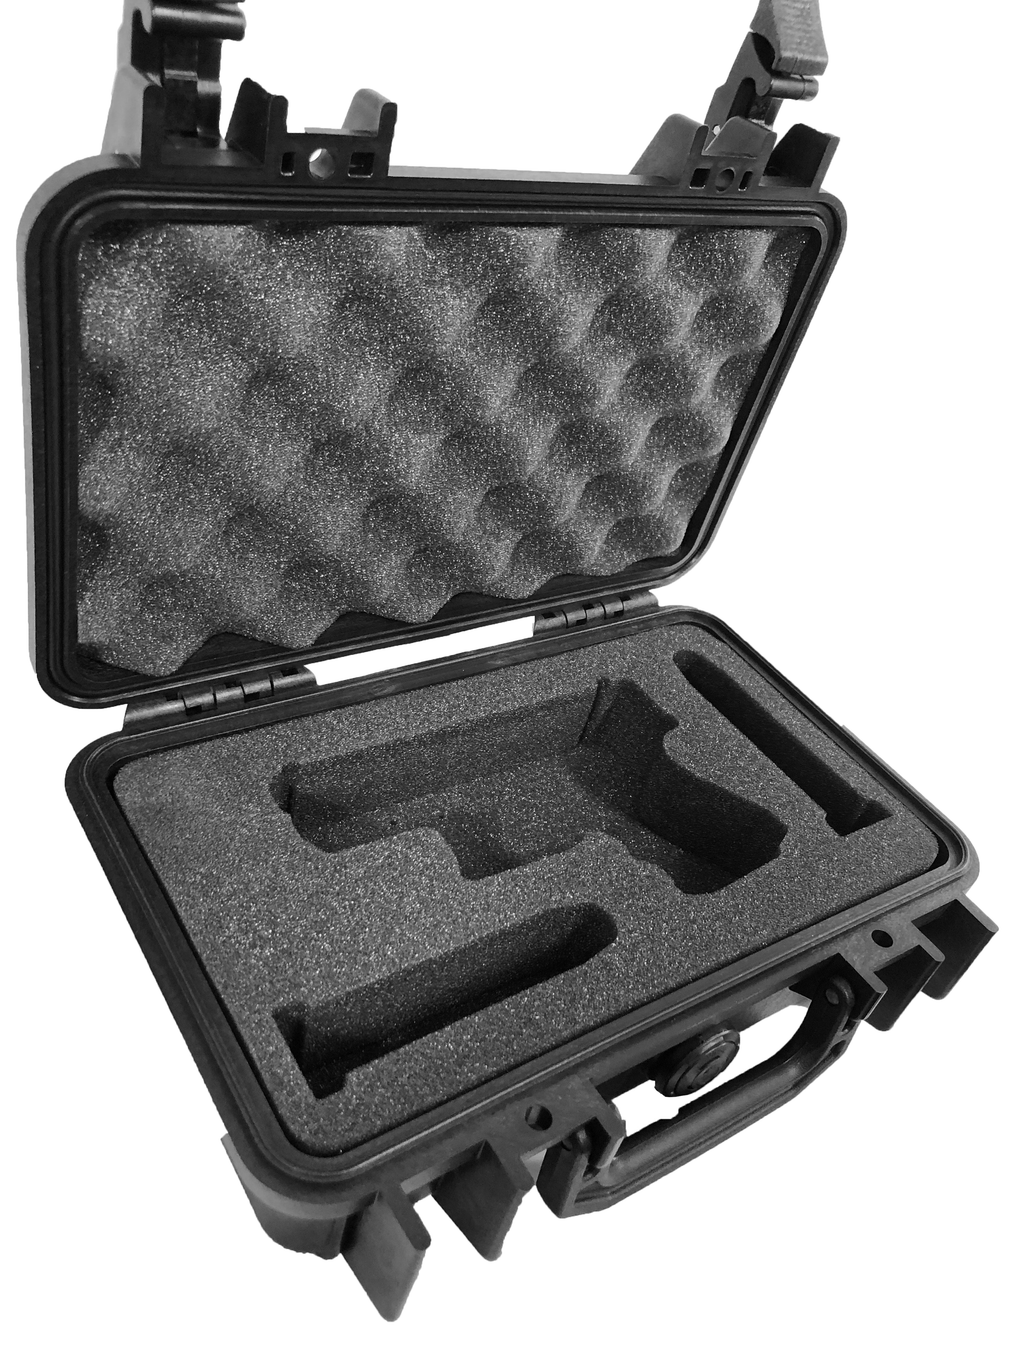 Pelican Case 1170 Custom Foam Insert for Smith & Wesson SD9VE (Foam Only)